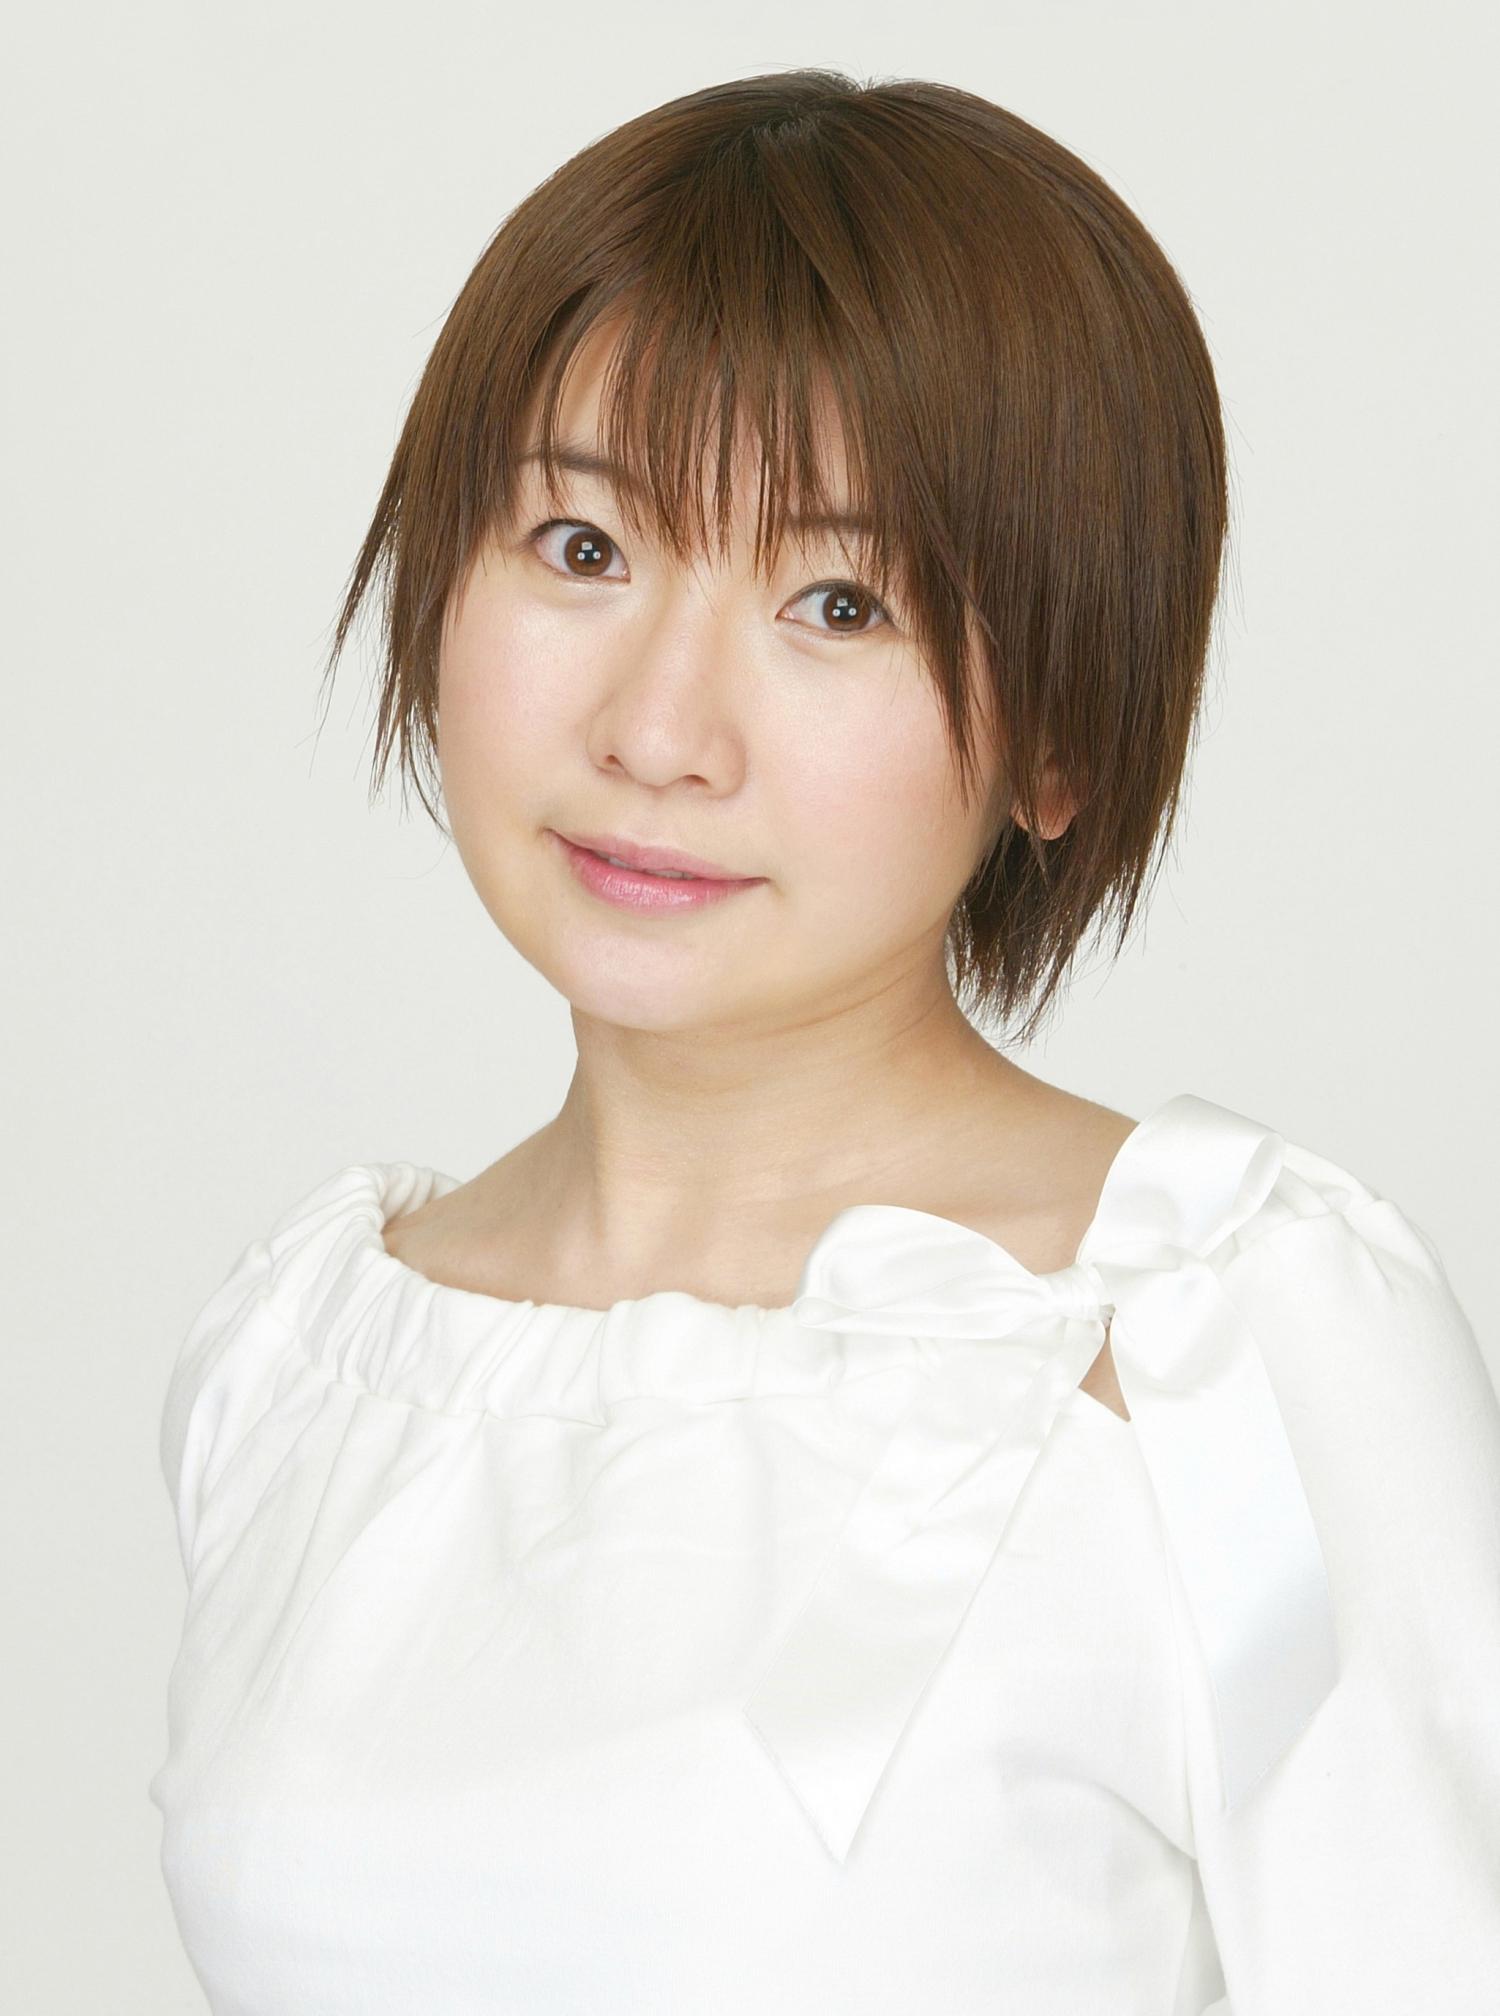 Miyu Matsuki